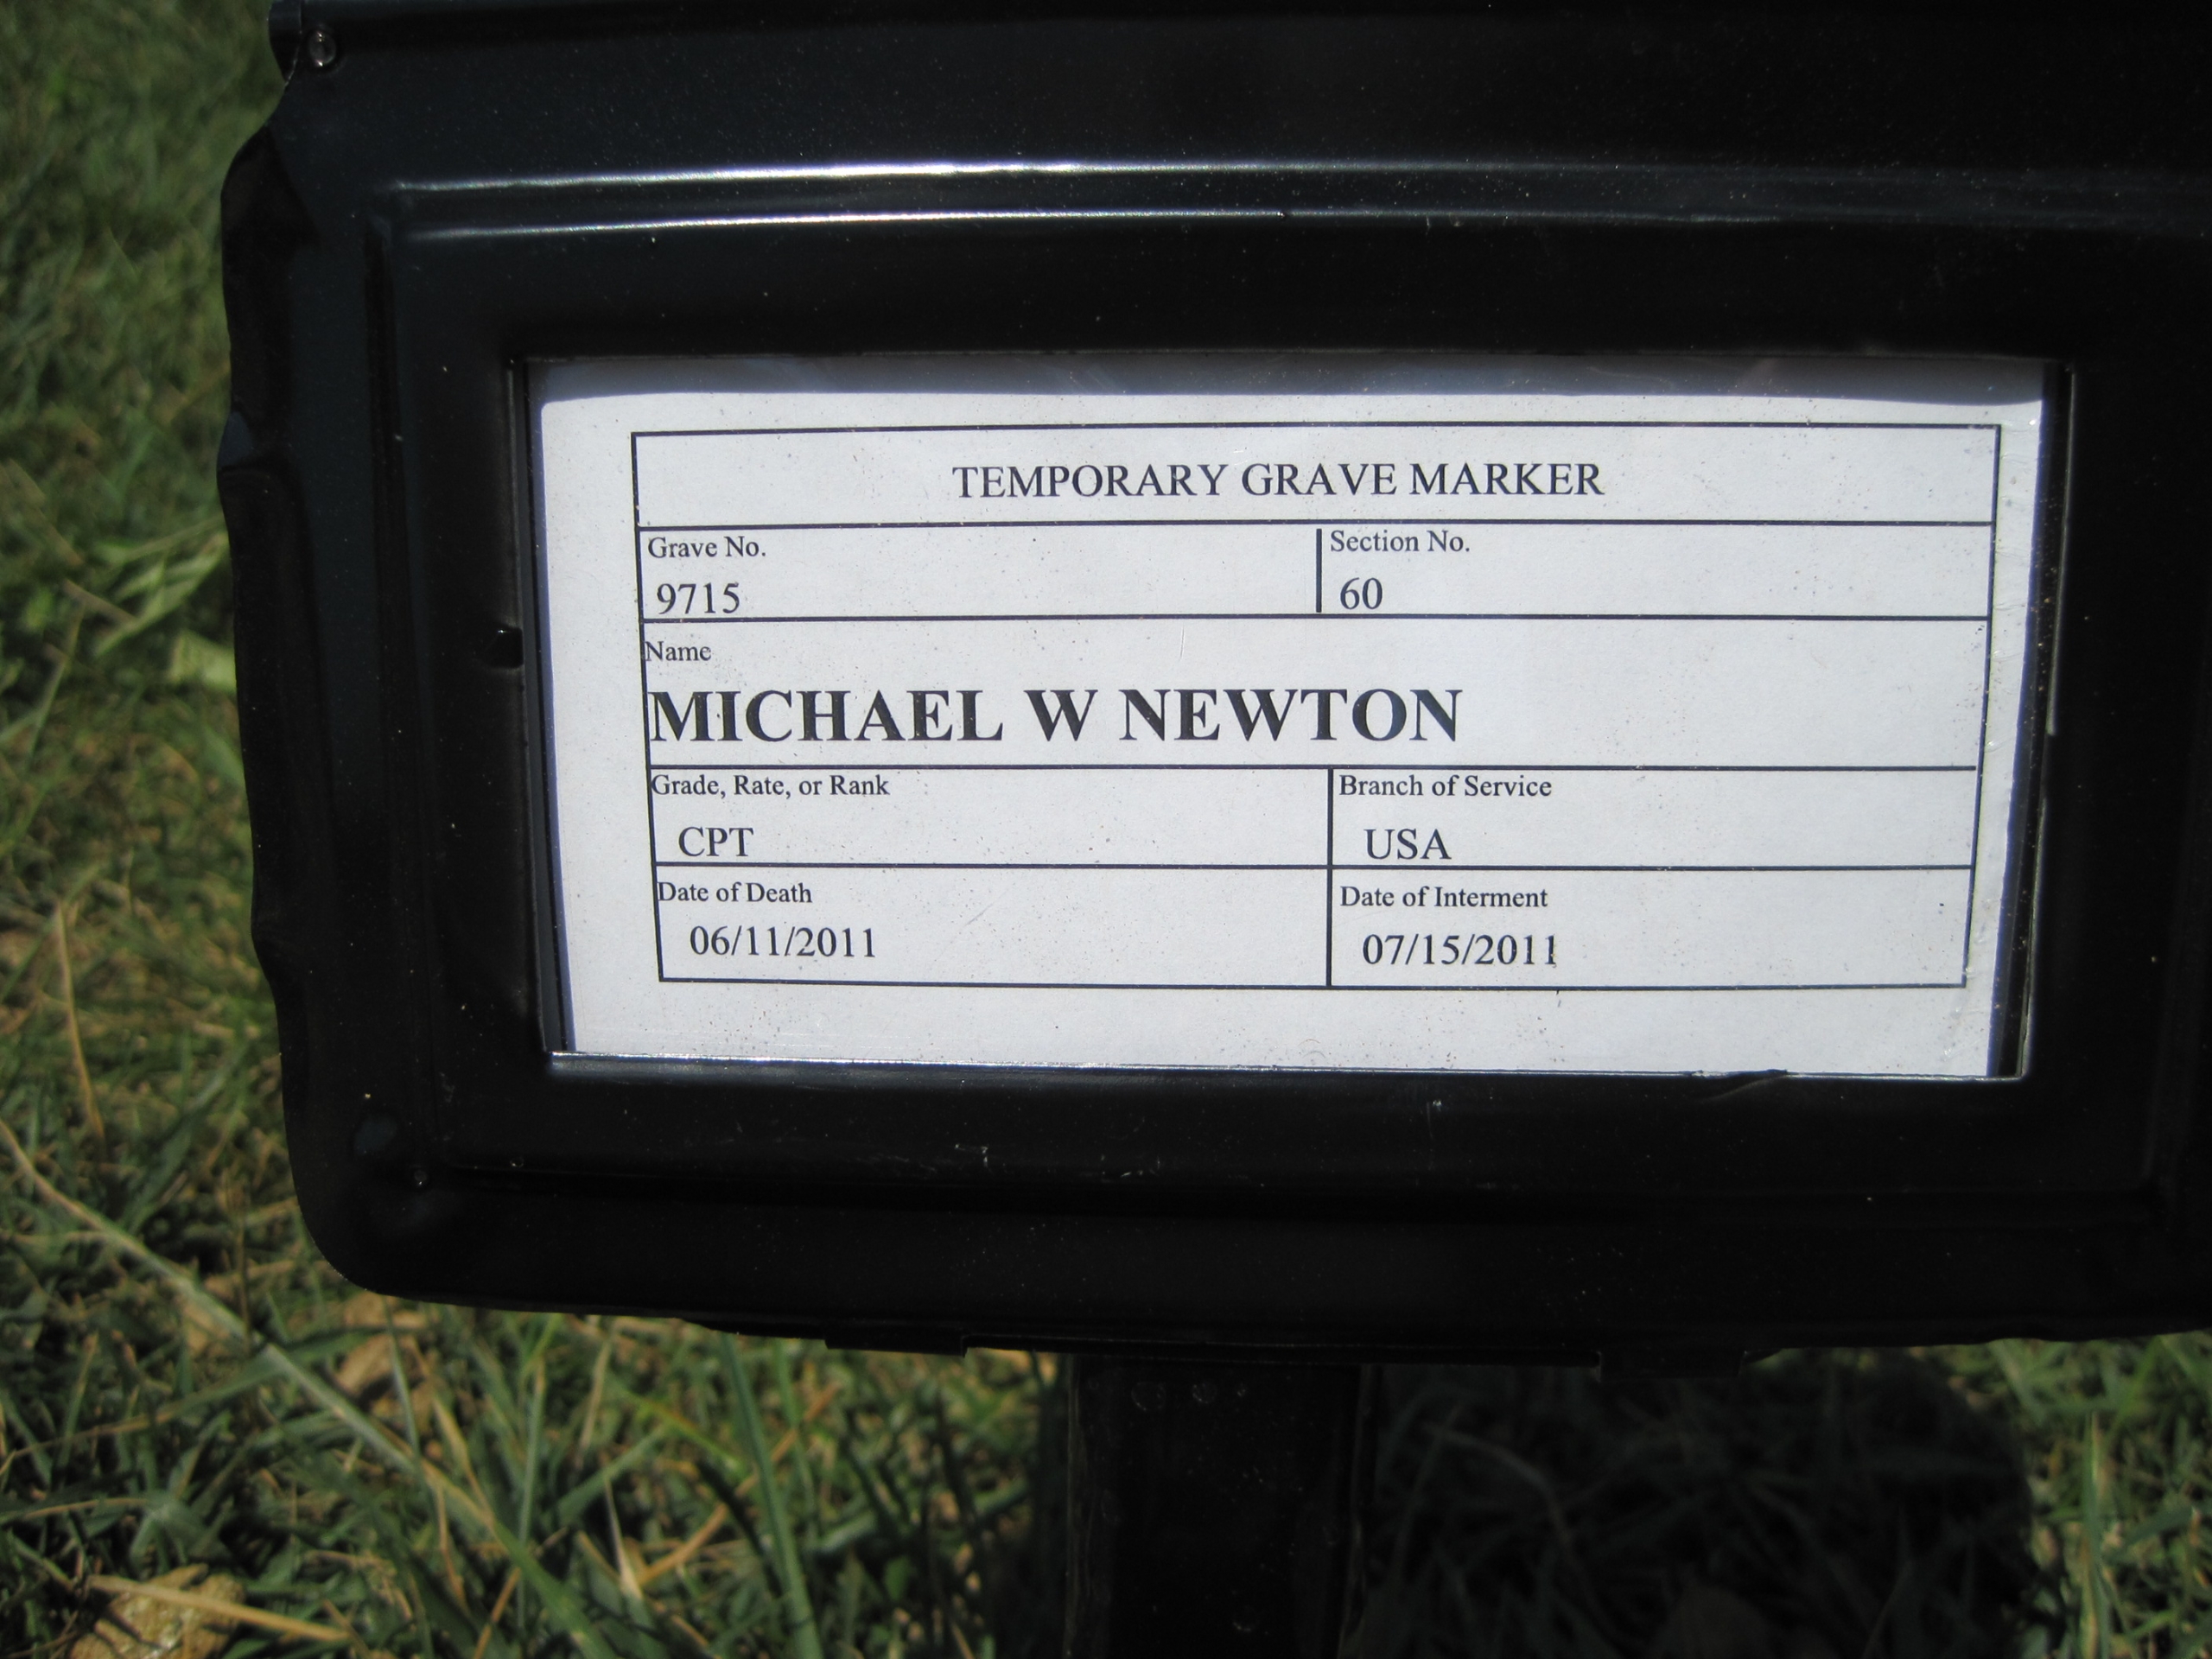 mwnewton-gravesite-photo-by-eileen-horan-july-2011-001